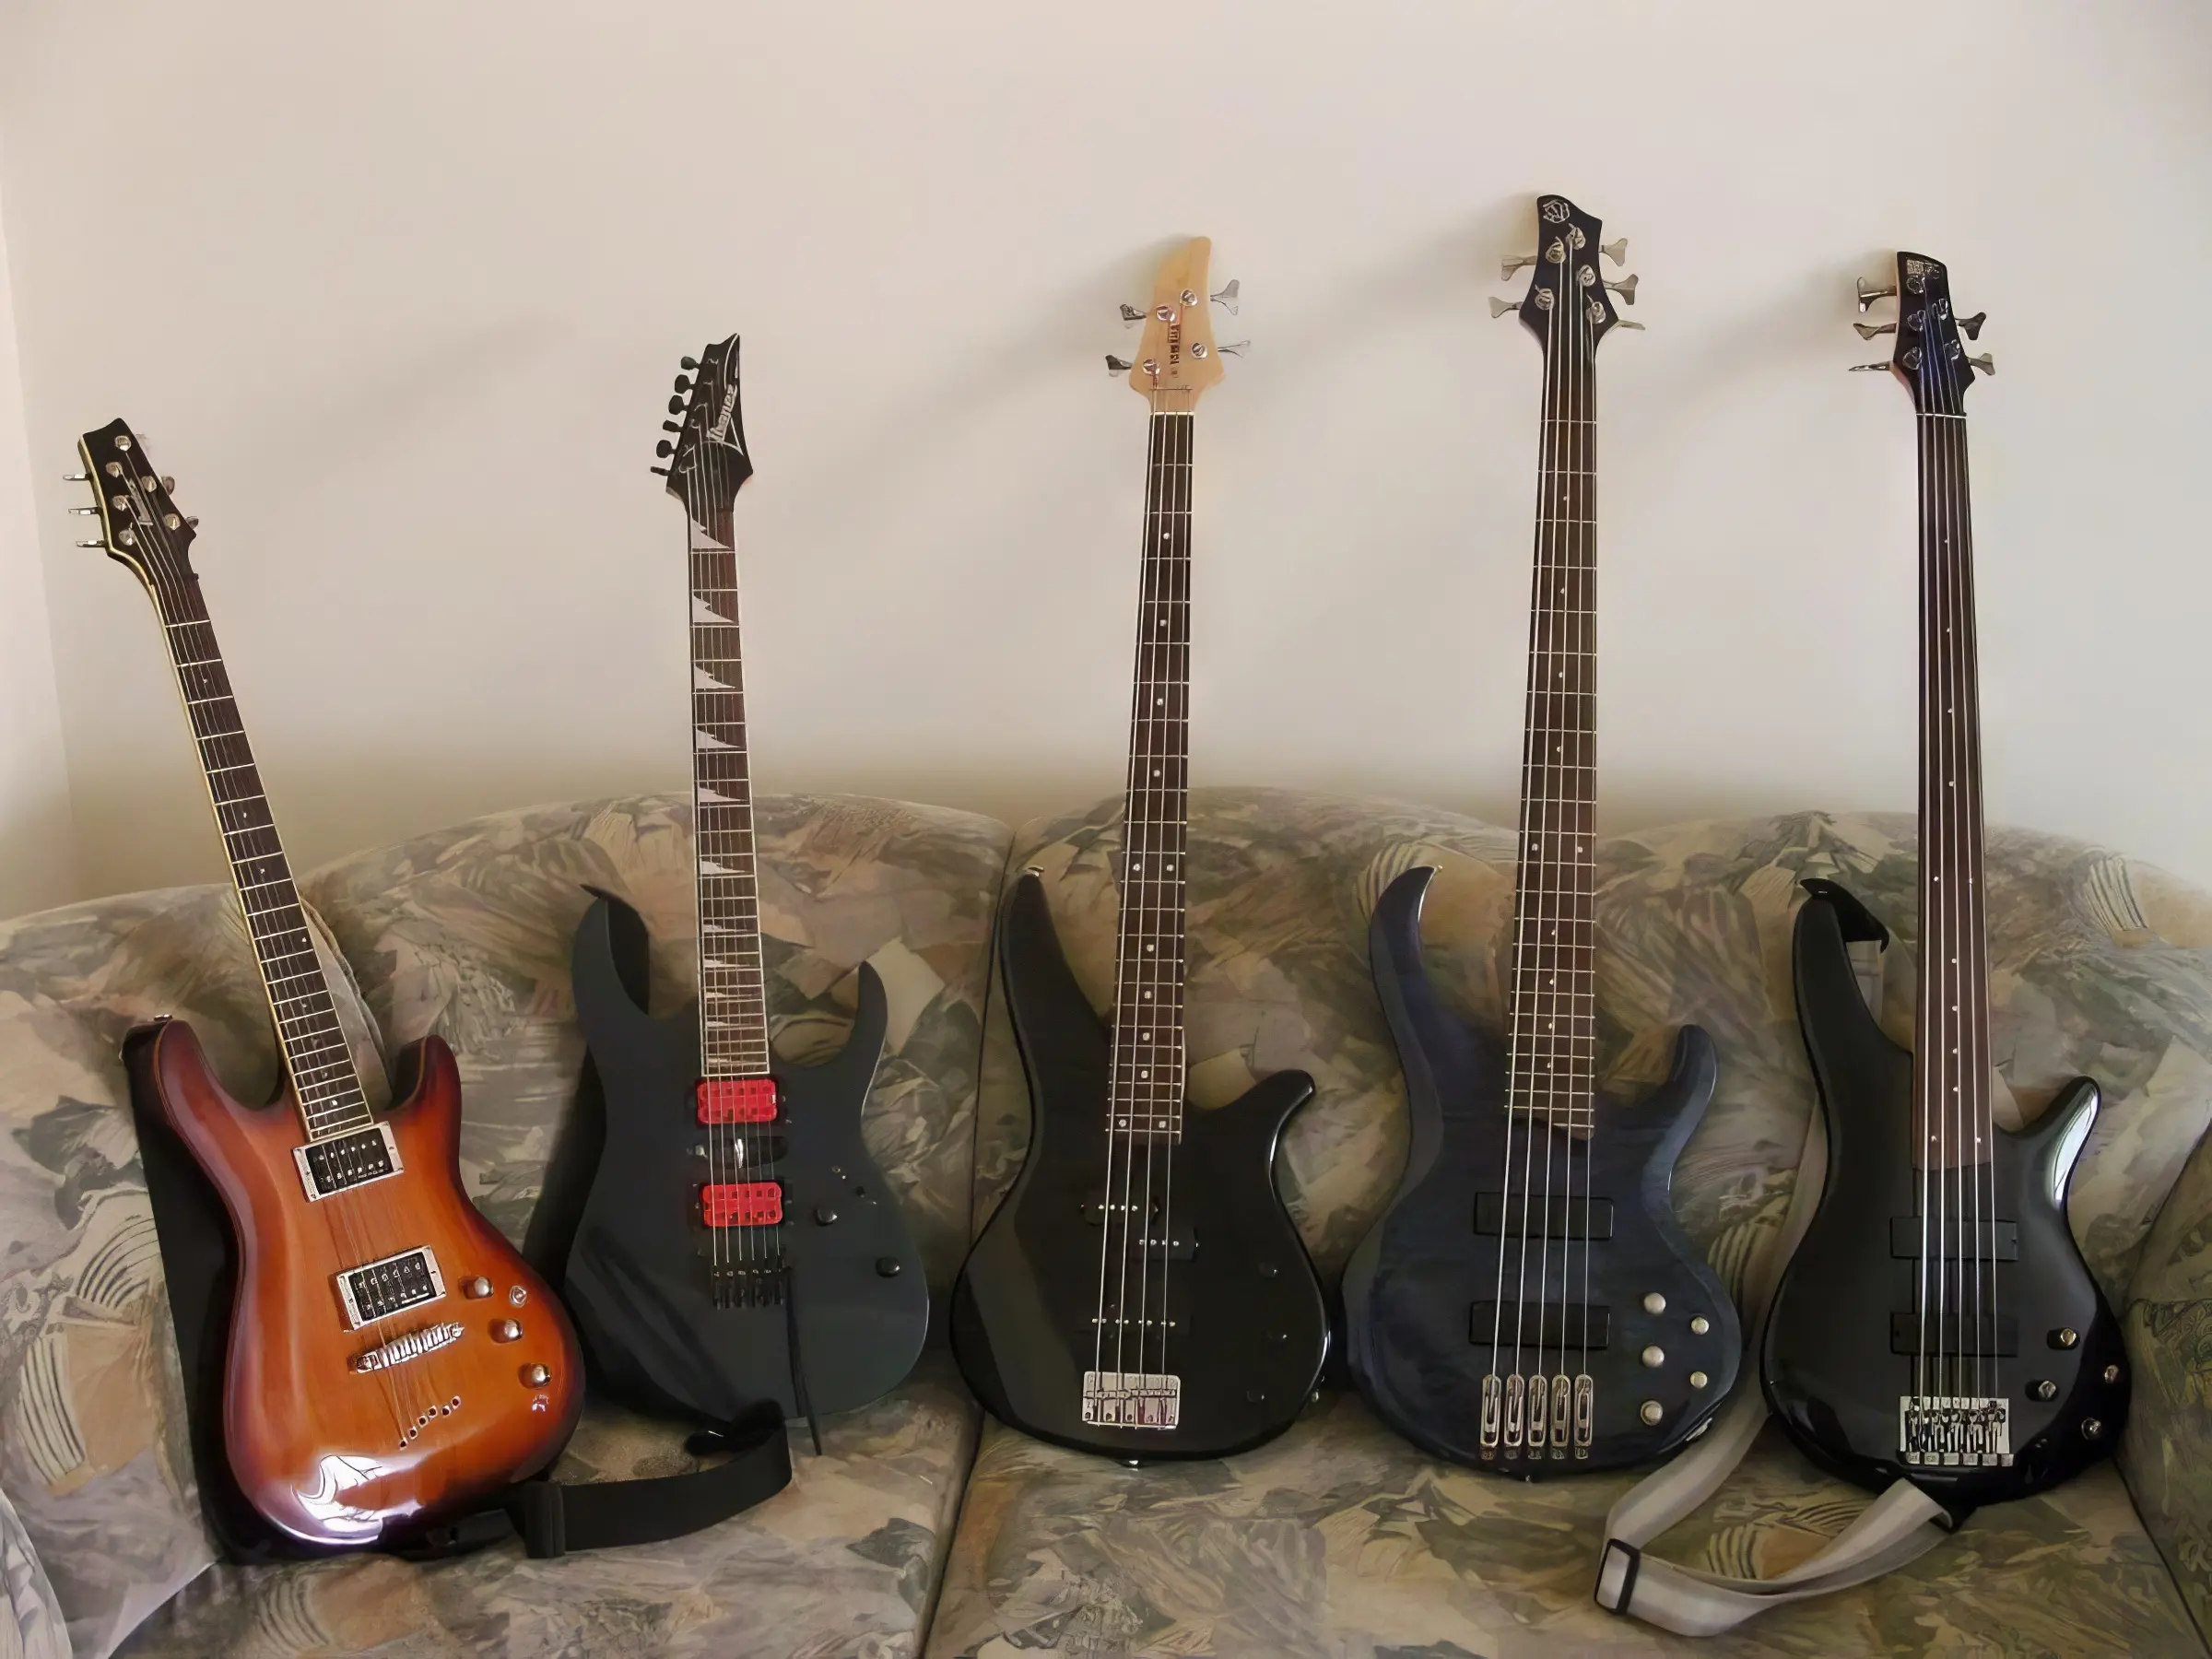 Piąteczka, od lewej Ibanez N427, Ibanez RG170DX z Dimarzio IBZ USA F2, dalej Yamaha RBX170, Ibanez BTB405QM i Ibanez  SR305 Fret gitara kolekcja basów